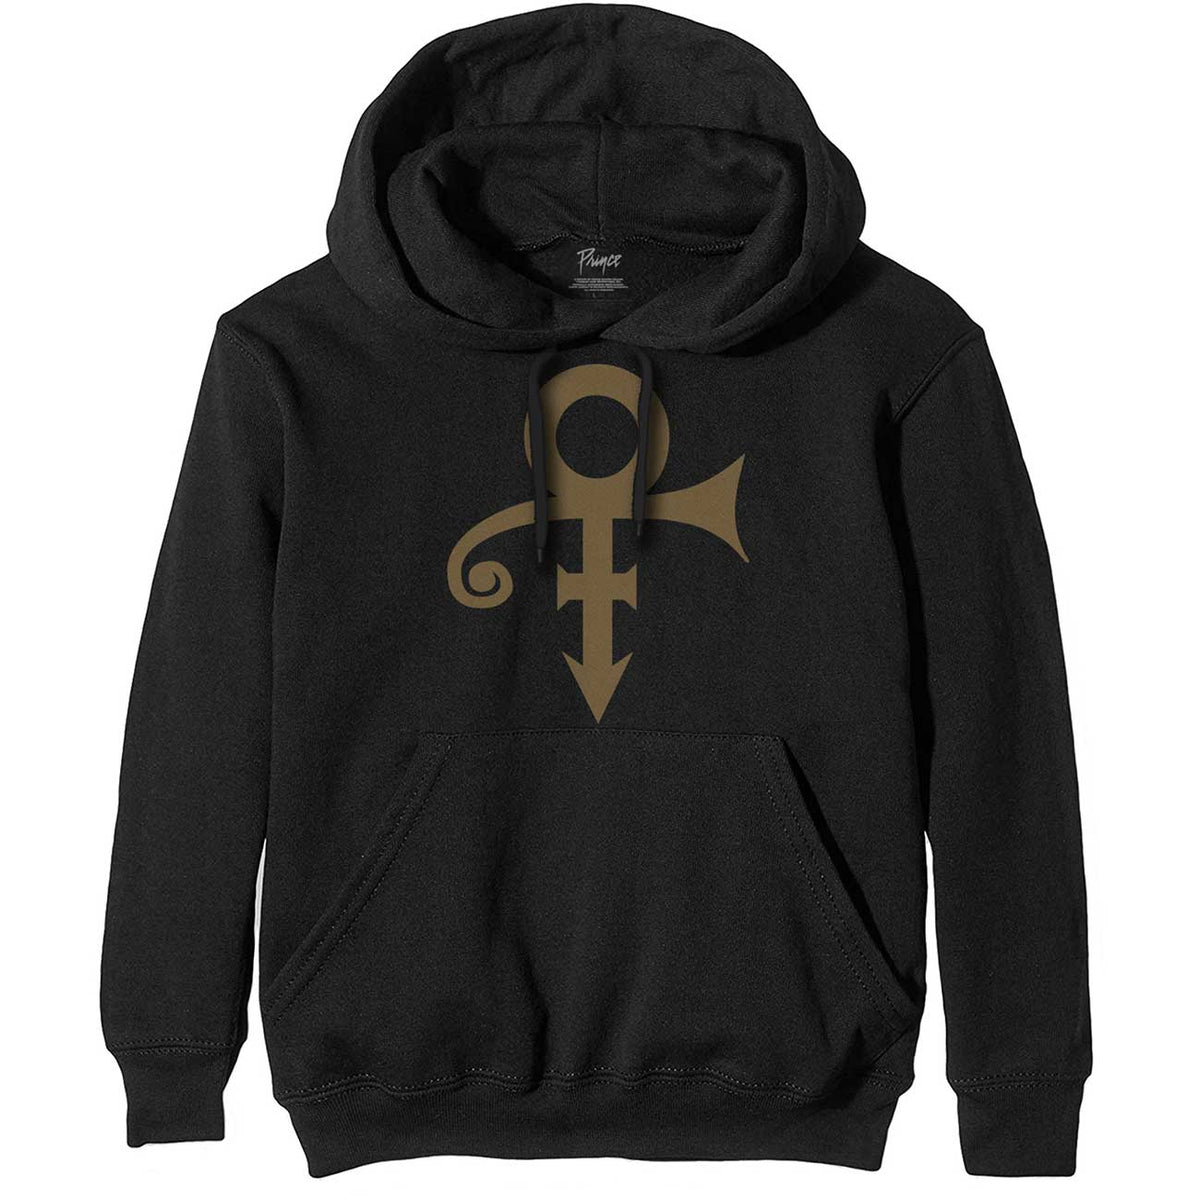 Prince Hoodie - Gold Symbol Black Design  - Unisex Official Licensed